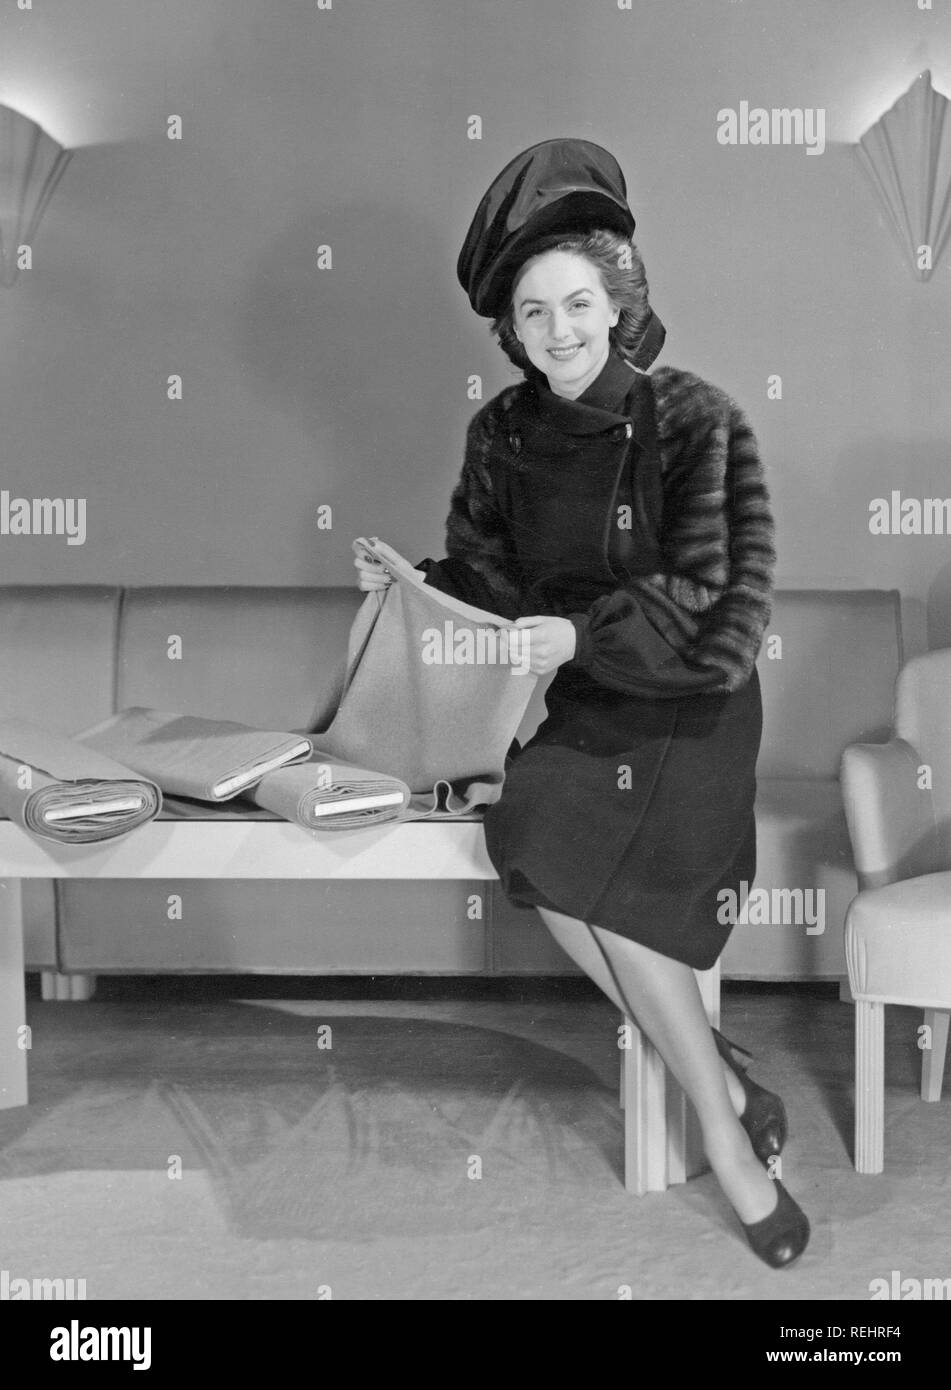 La mode féminine dans les années 40. Une jeune femme en costume typique des années 40. Un manteau de fourrure de détails et un chapeau assorti. Son nom est Hjördig Genberg et est l'épouse de l'acteur britannique David Niven. Kristoffersson Photo Ref X34-6. Suède 1946 Banque D'Images